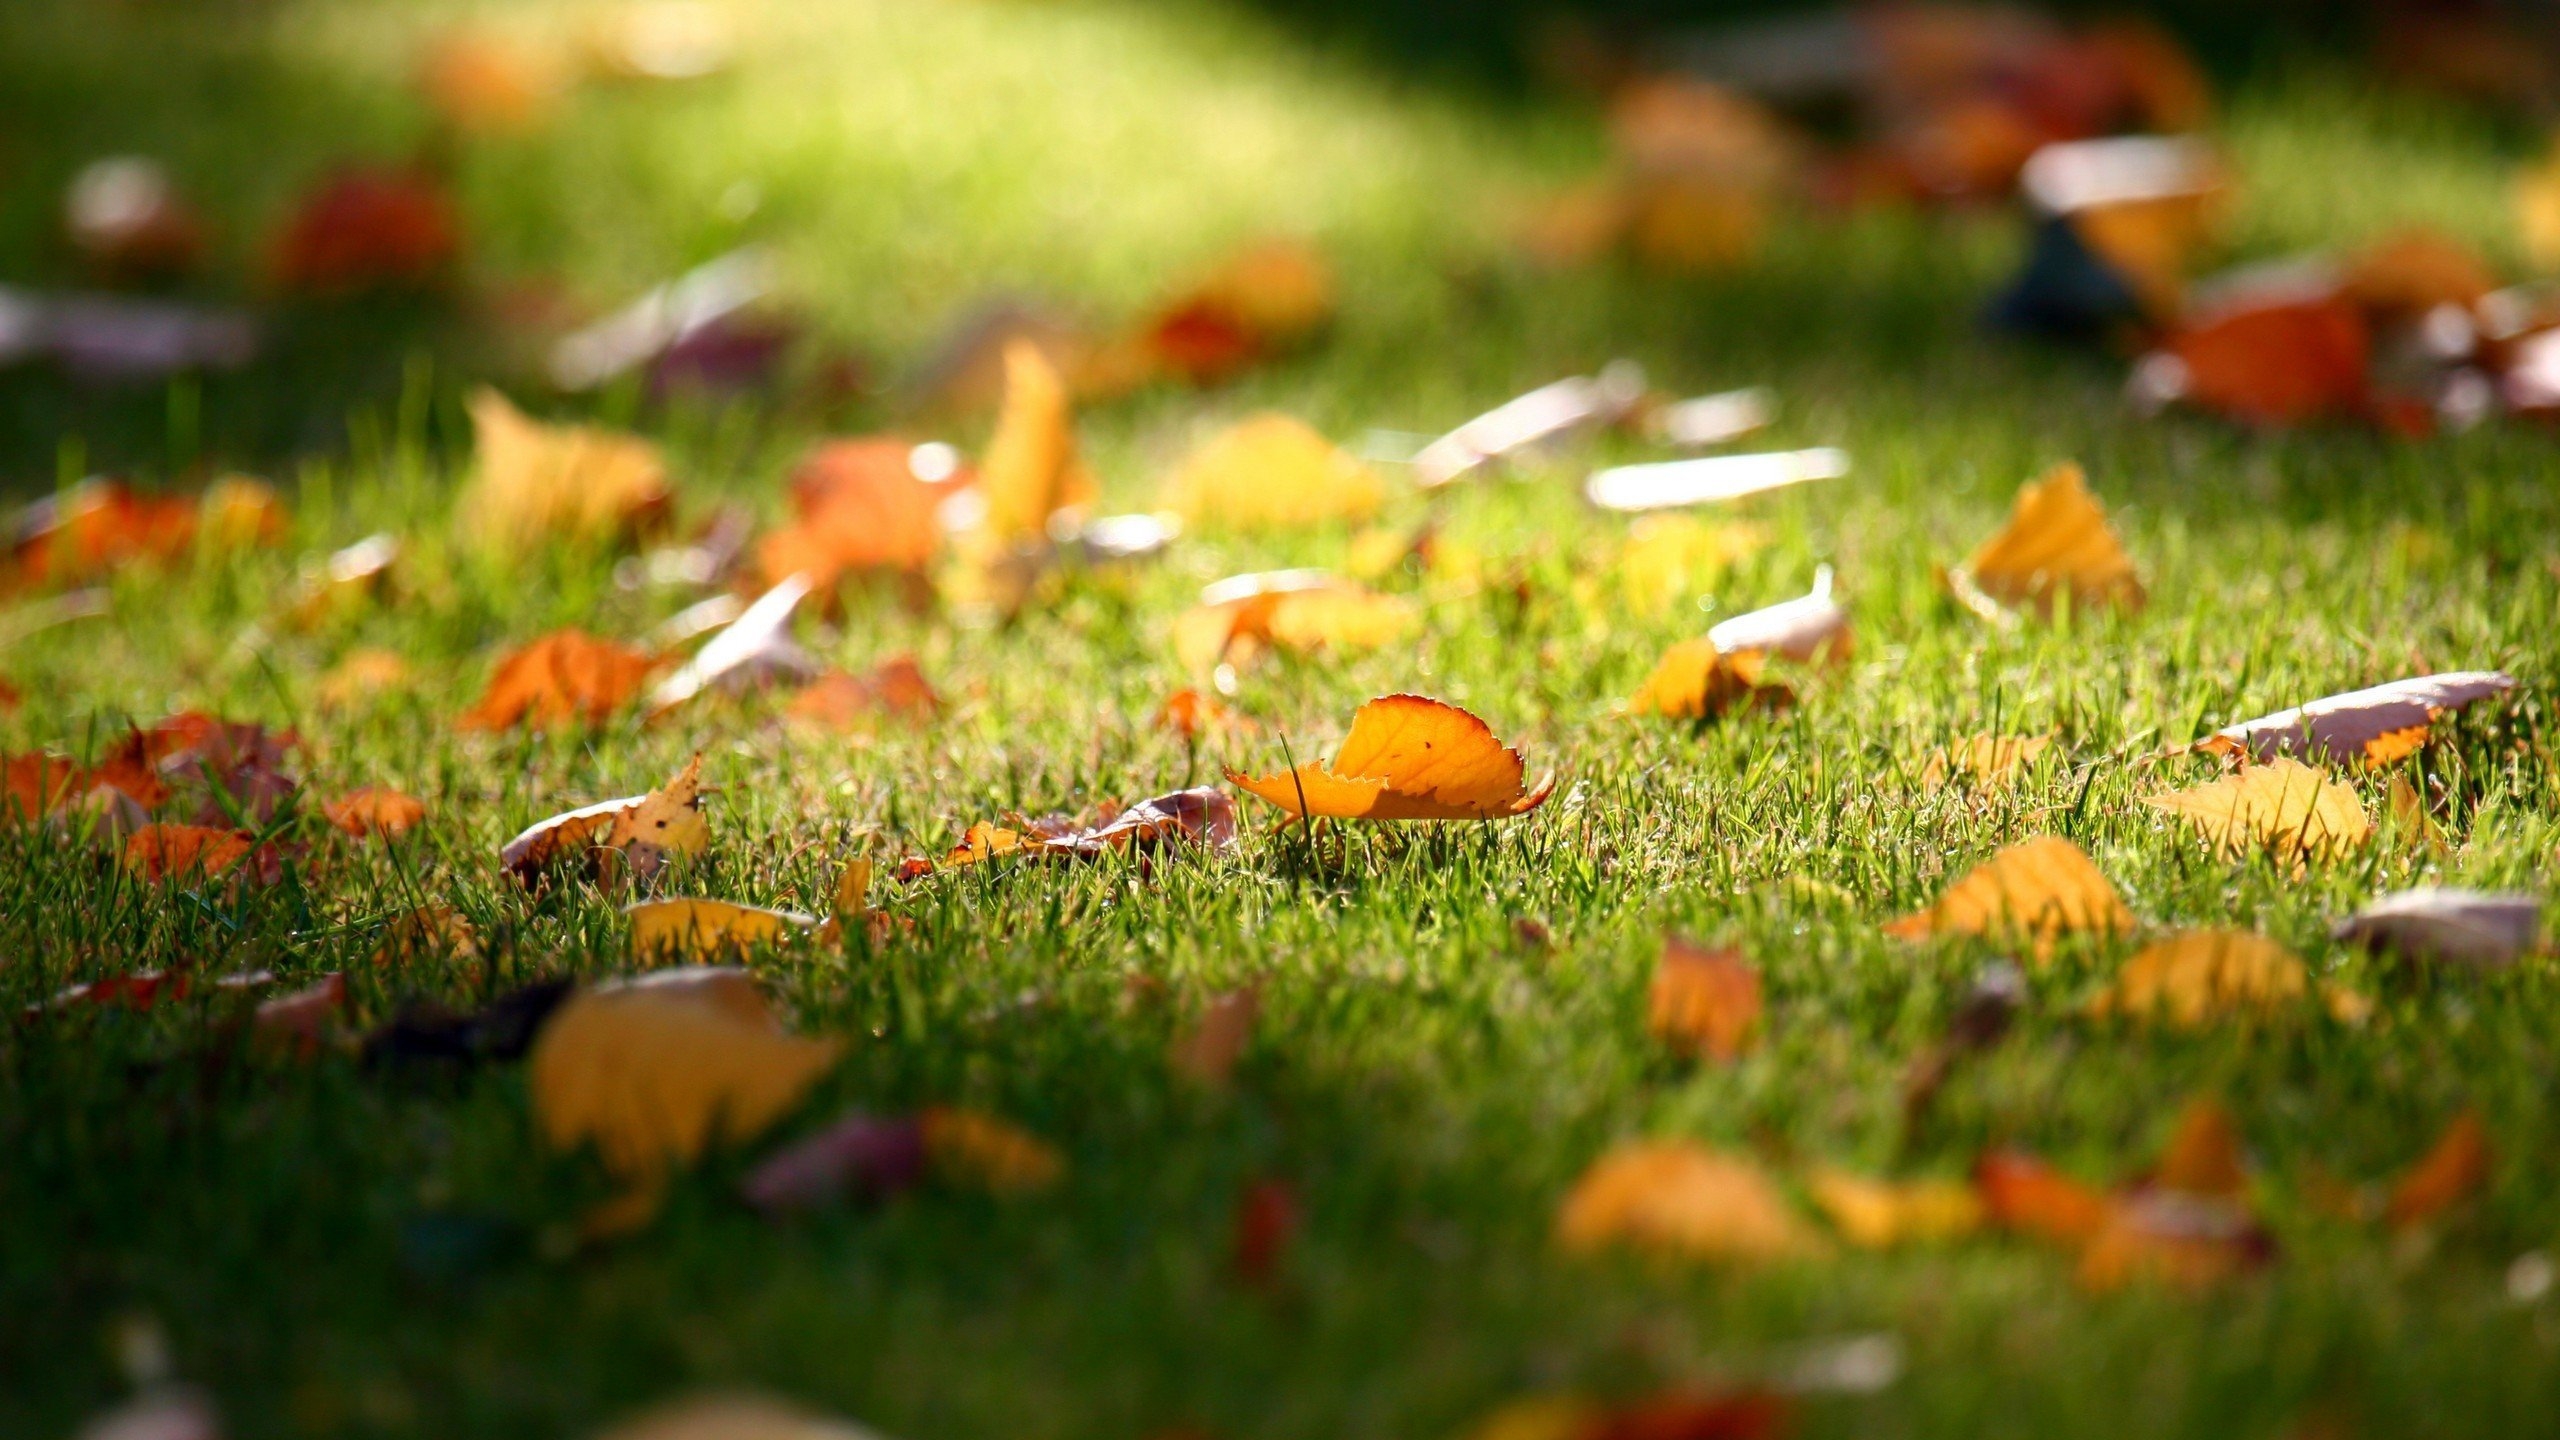 Carpet of Leaves for 2560x1440 HDTV resolution